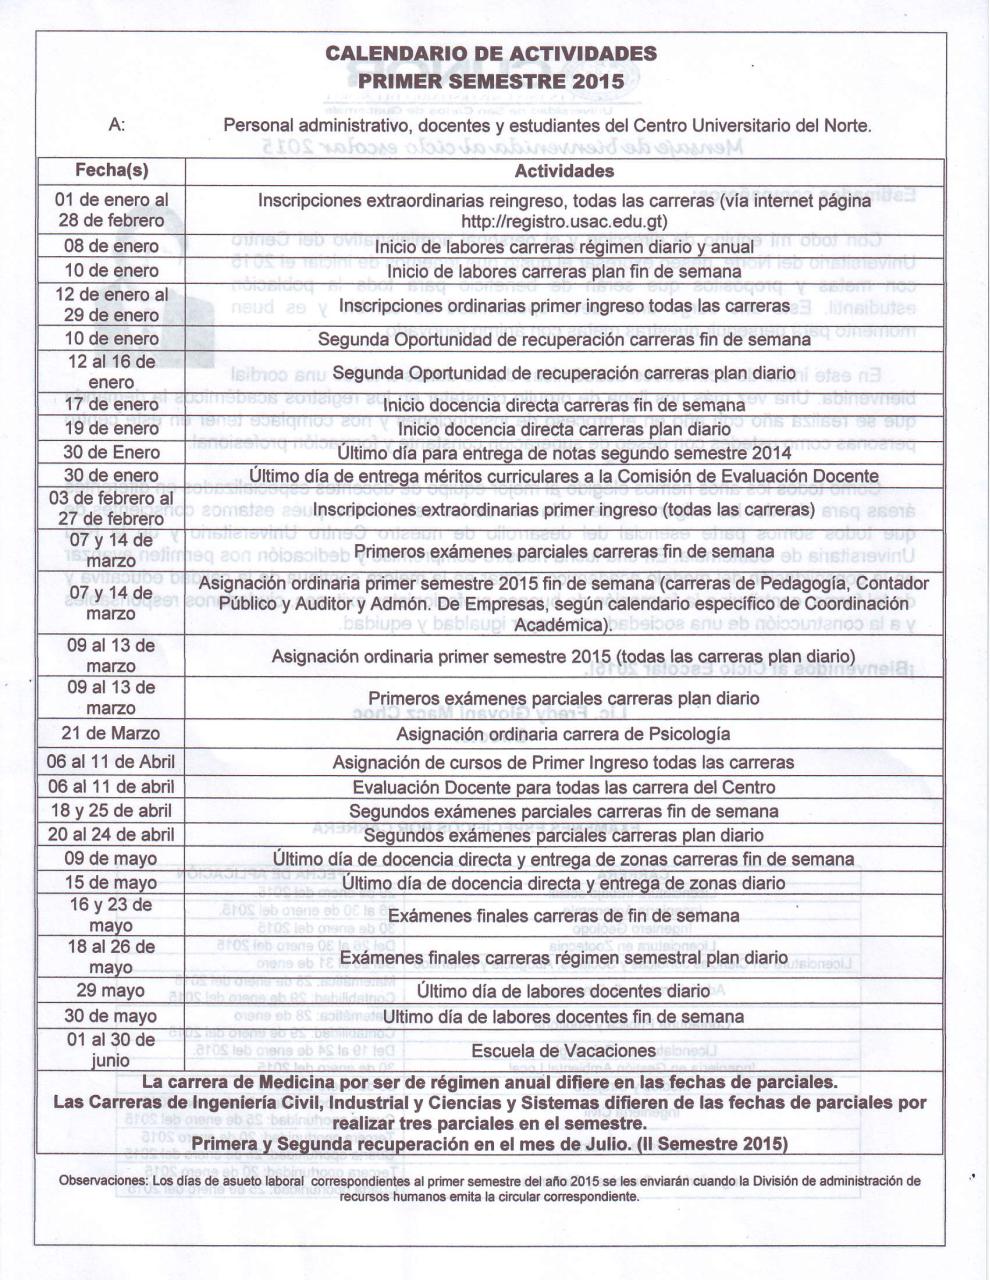 Calendario Actividades 1er. Semestre 2015.PDF - página 2/2